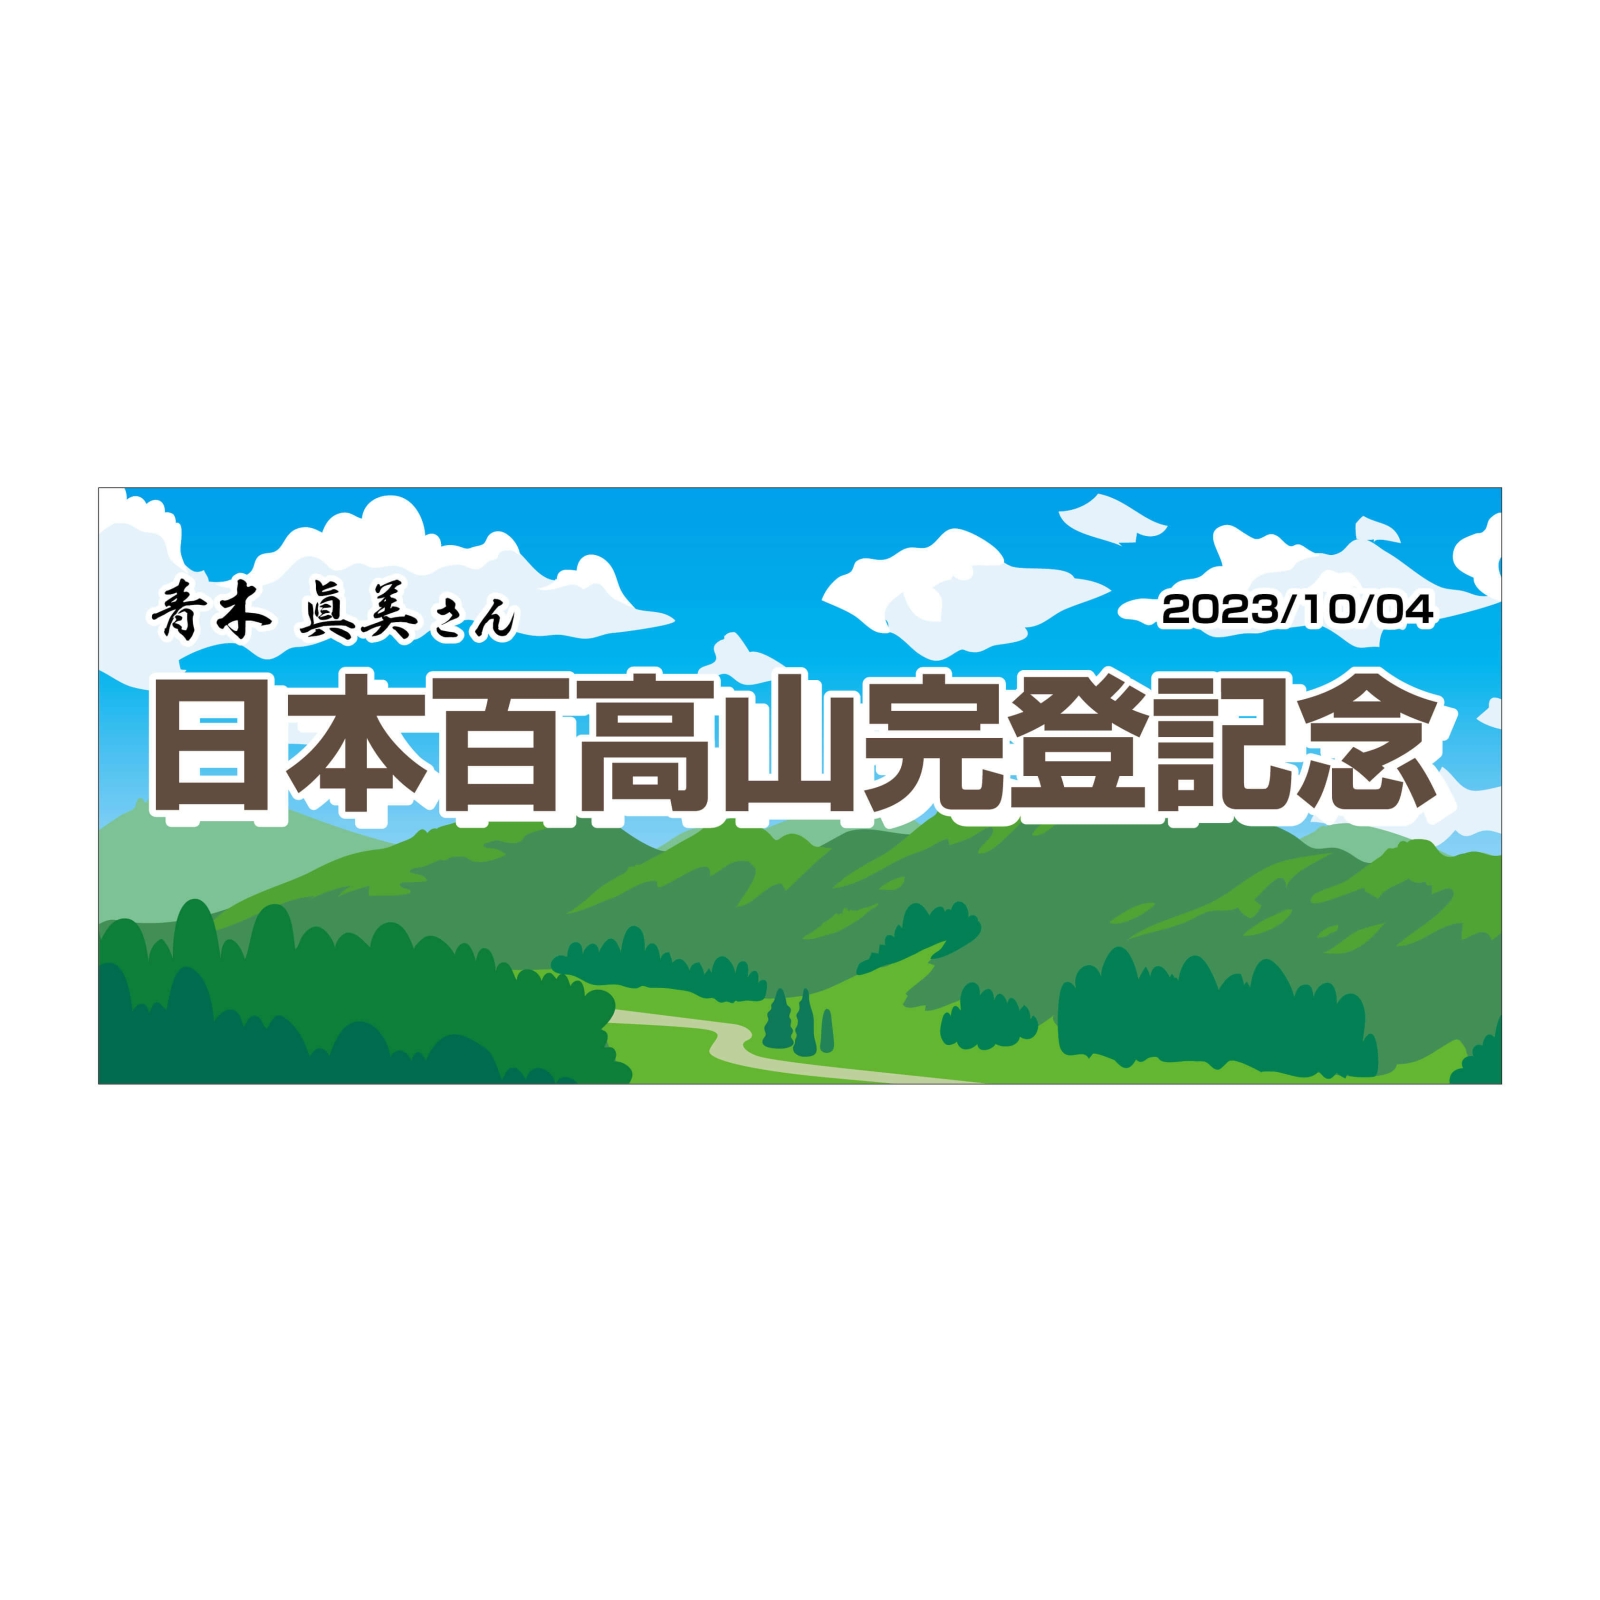 日本百高山完登記念のタオル